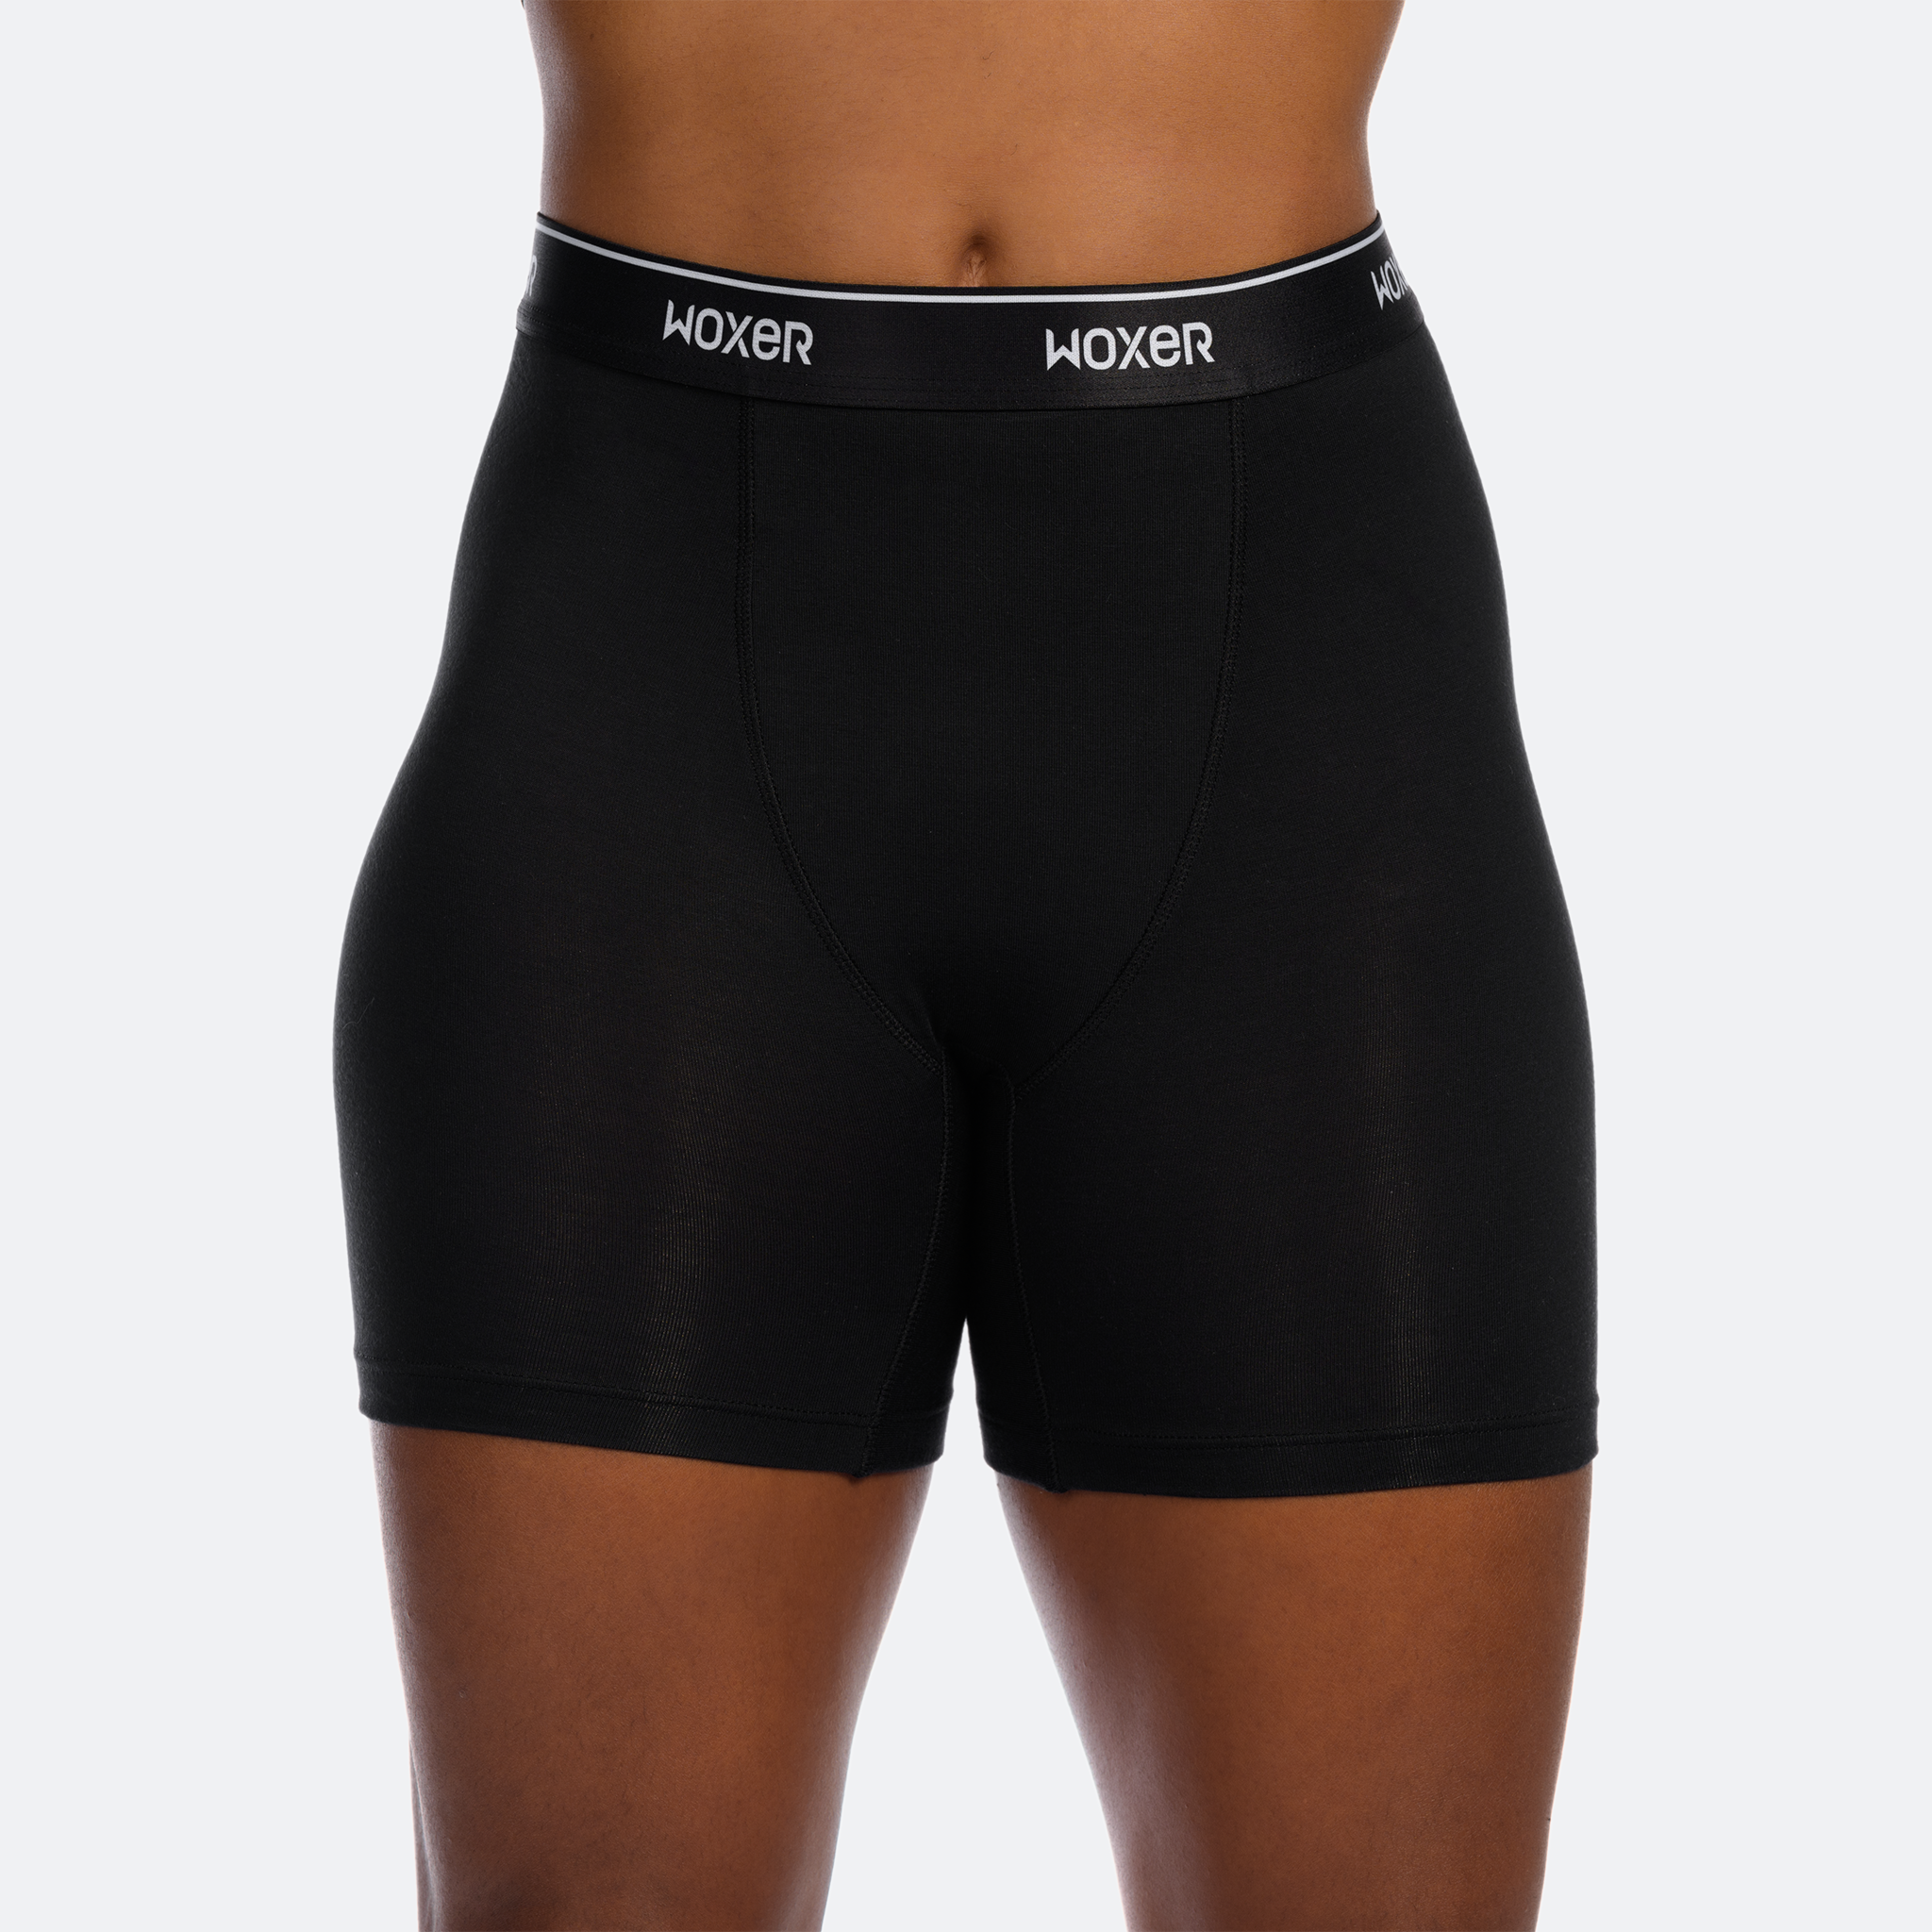 Black 2.0 Woxer for Girls Boxer | Women Baller Shorts Boxer | | Highwaisted Briefs